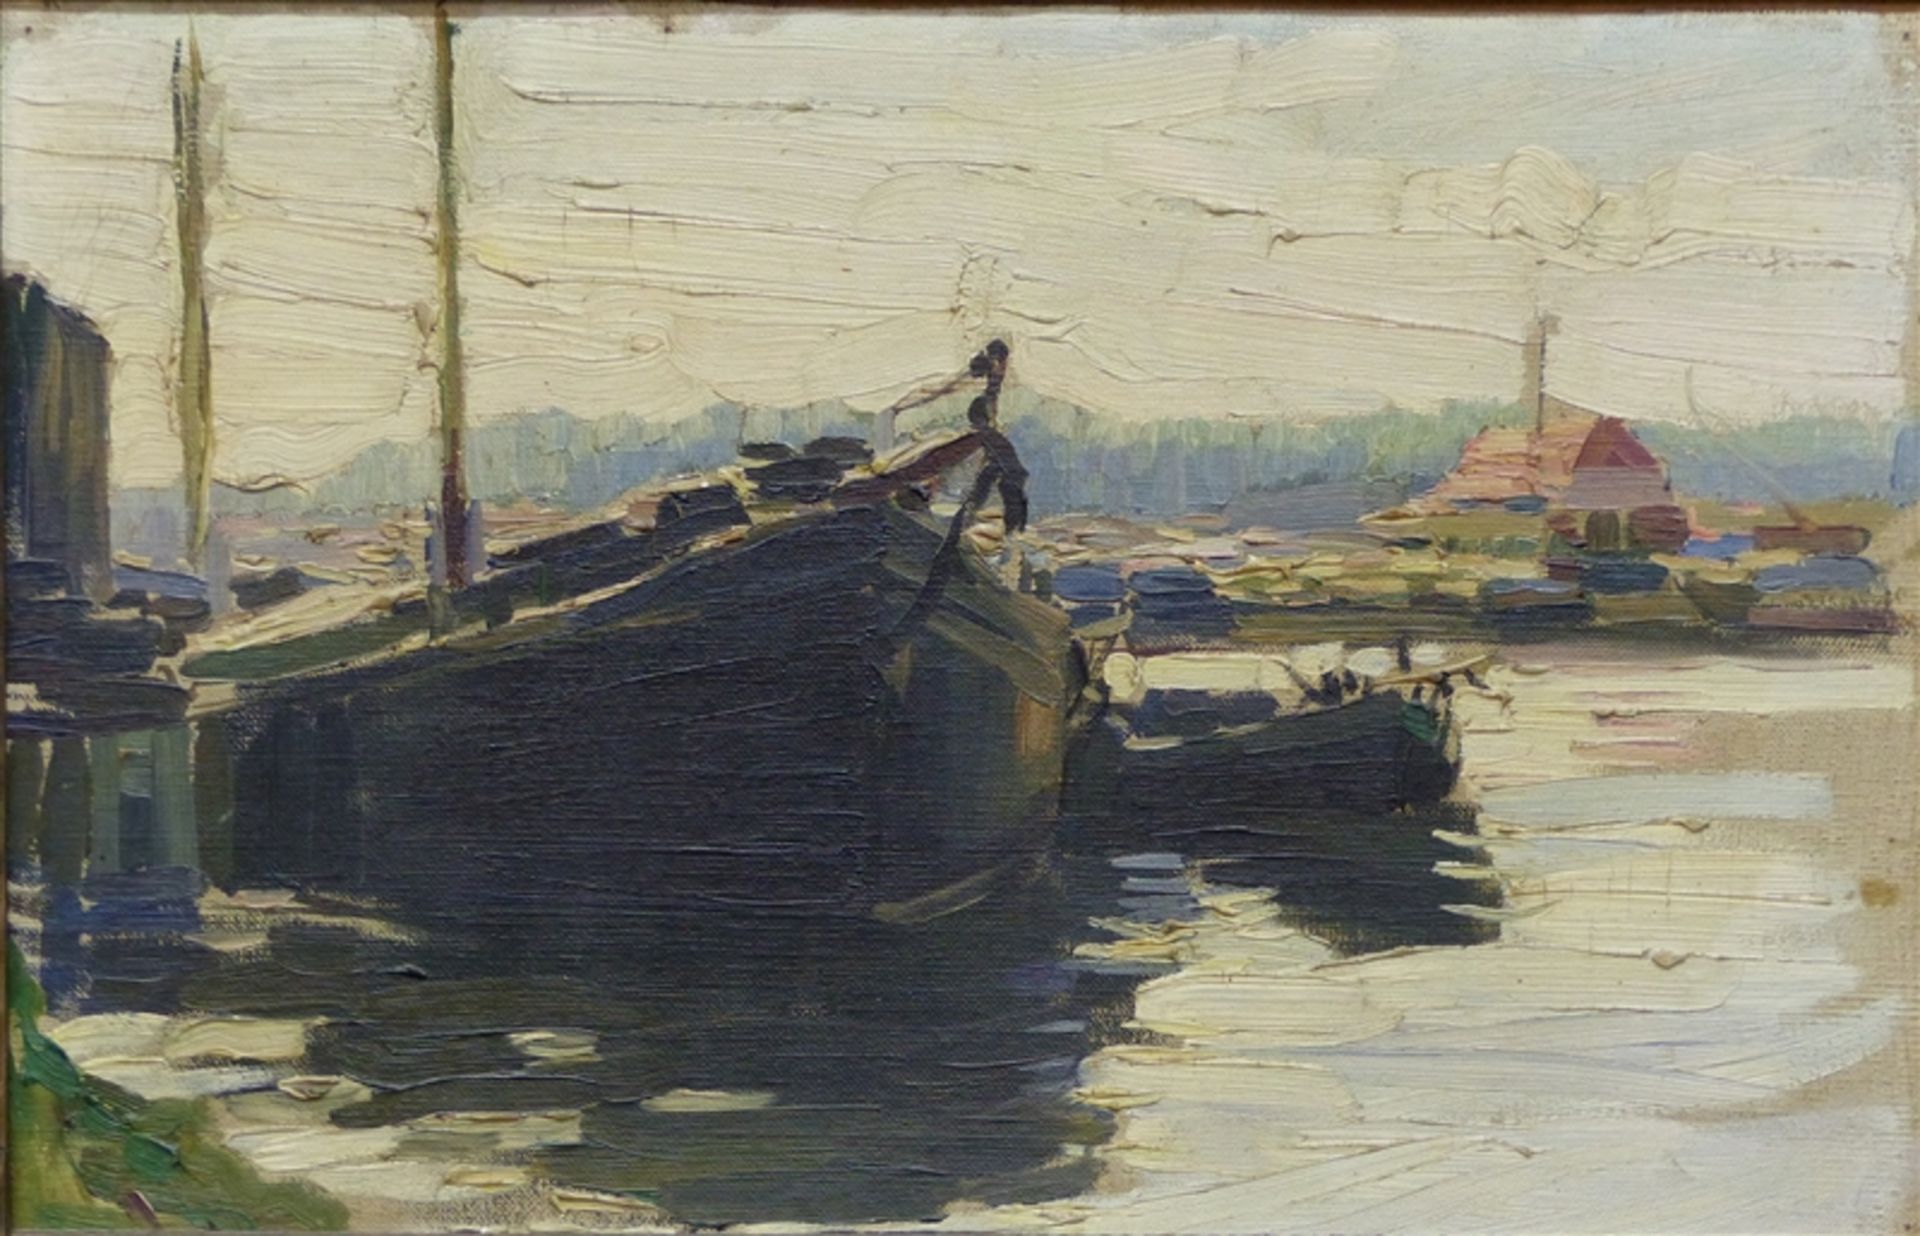 Holland, um 1900 Öl auf Malerpappe, Fischerboote im Hafen, impressionistische Malweise, 35x51 cm, im